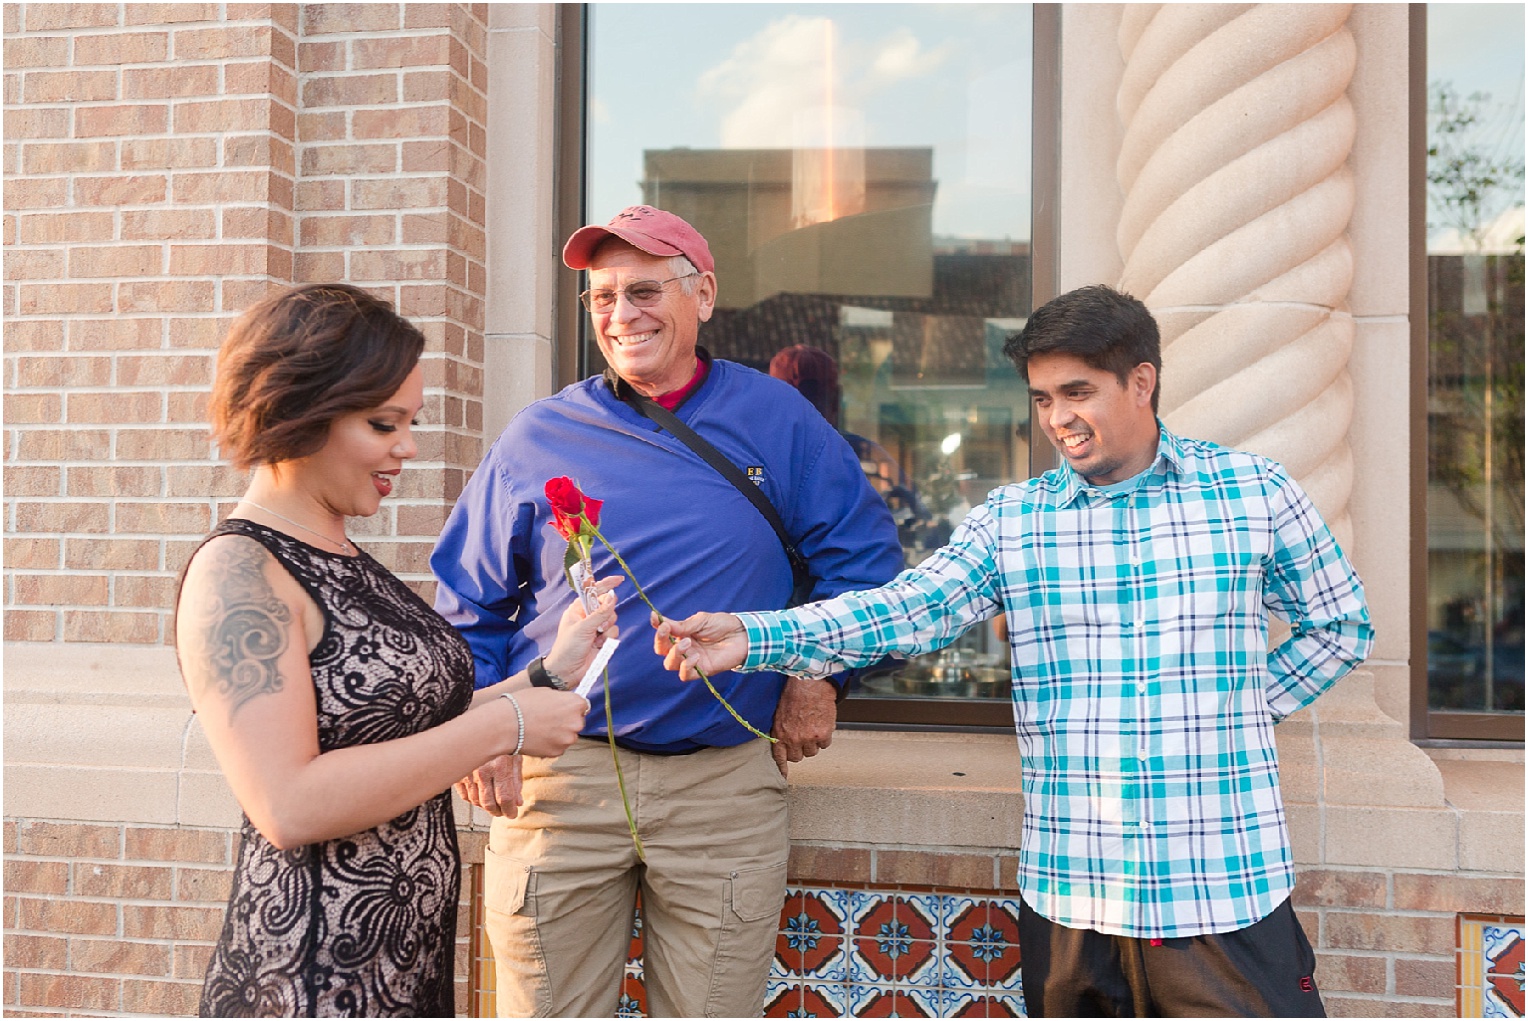 Kansas City Engagement Proposal Tucson AZ Beth & Michael surprise engagement proposal scavenger hunt with roses